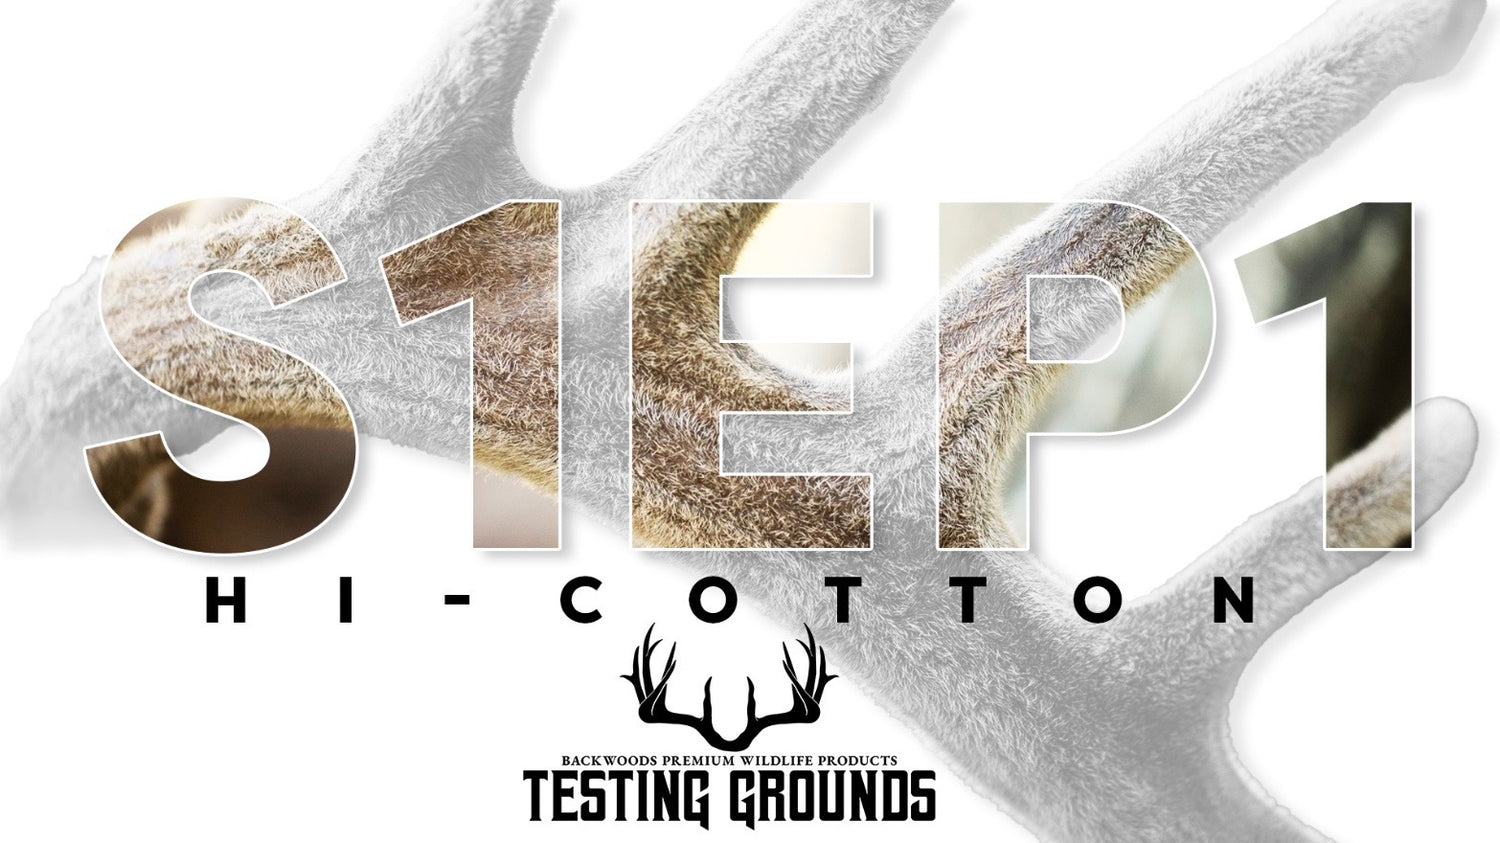 S1EP1 - Hi Cotton